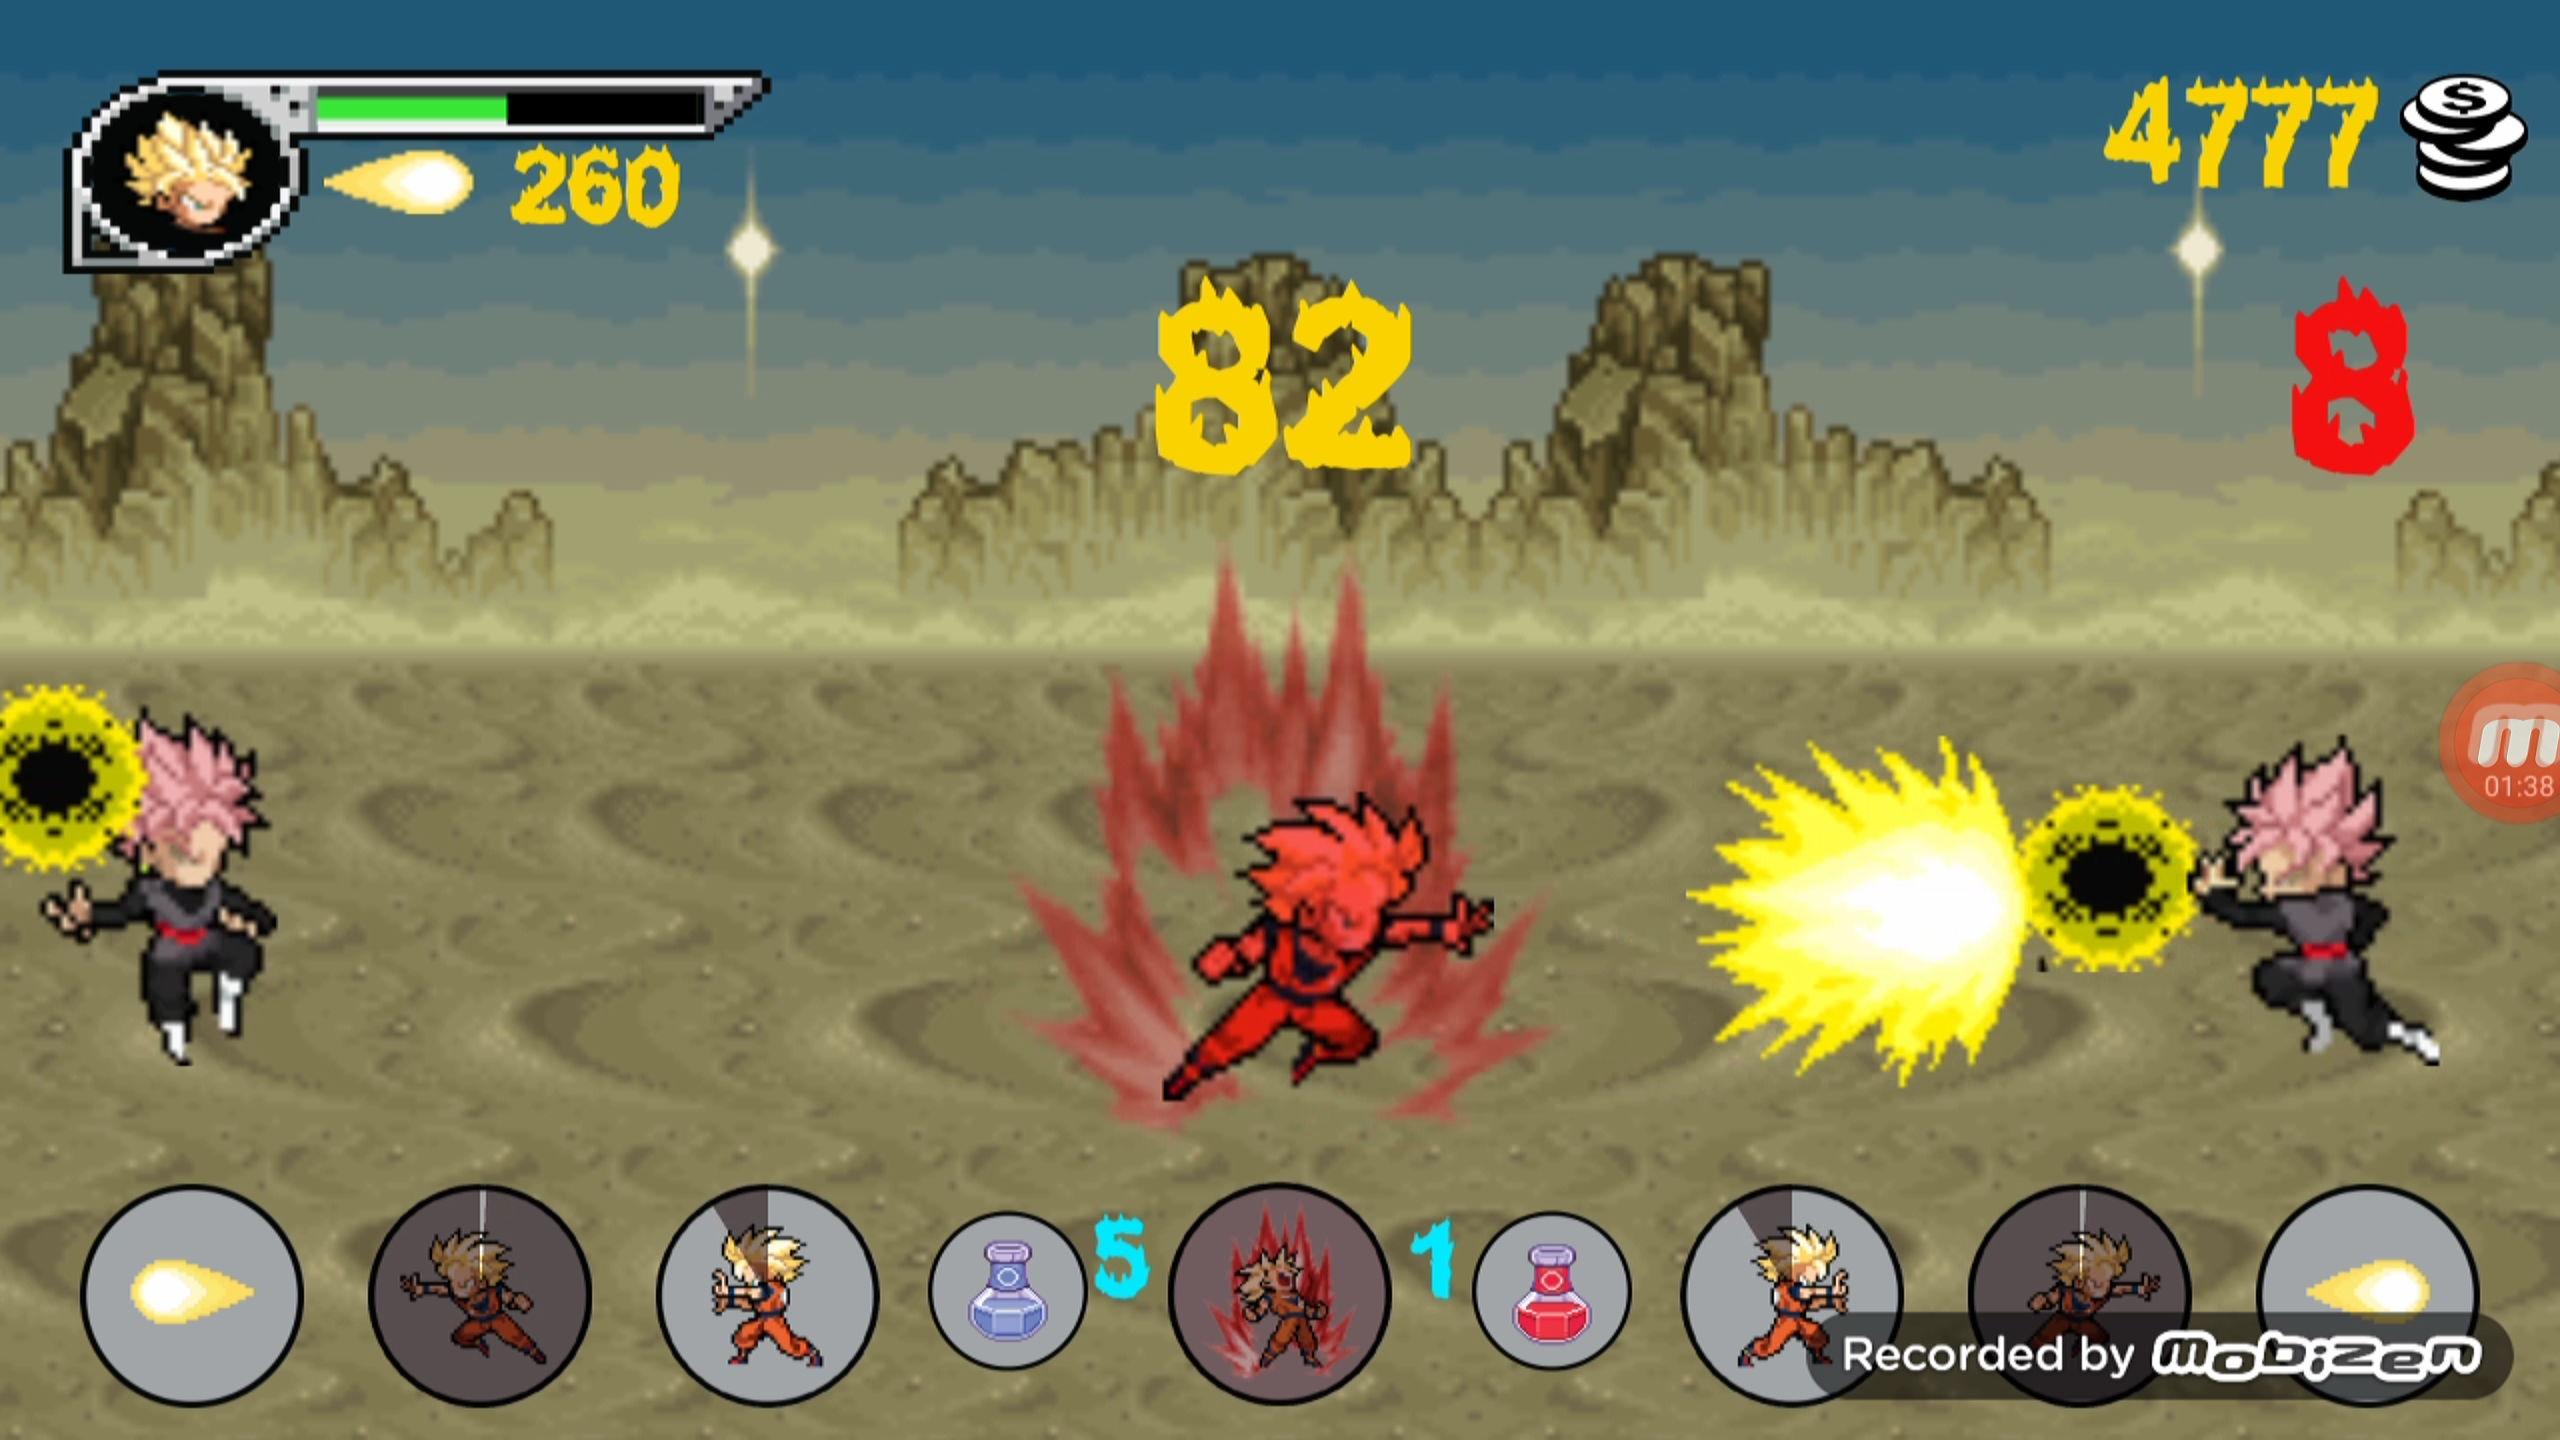 Screenshot 1 of ड्रैगन जेड योद्धा की लड़ाई 1.1